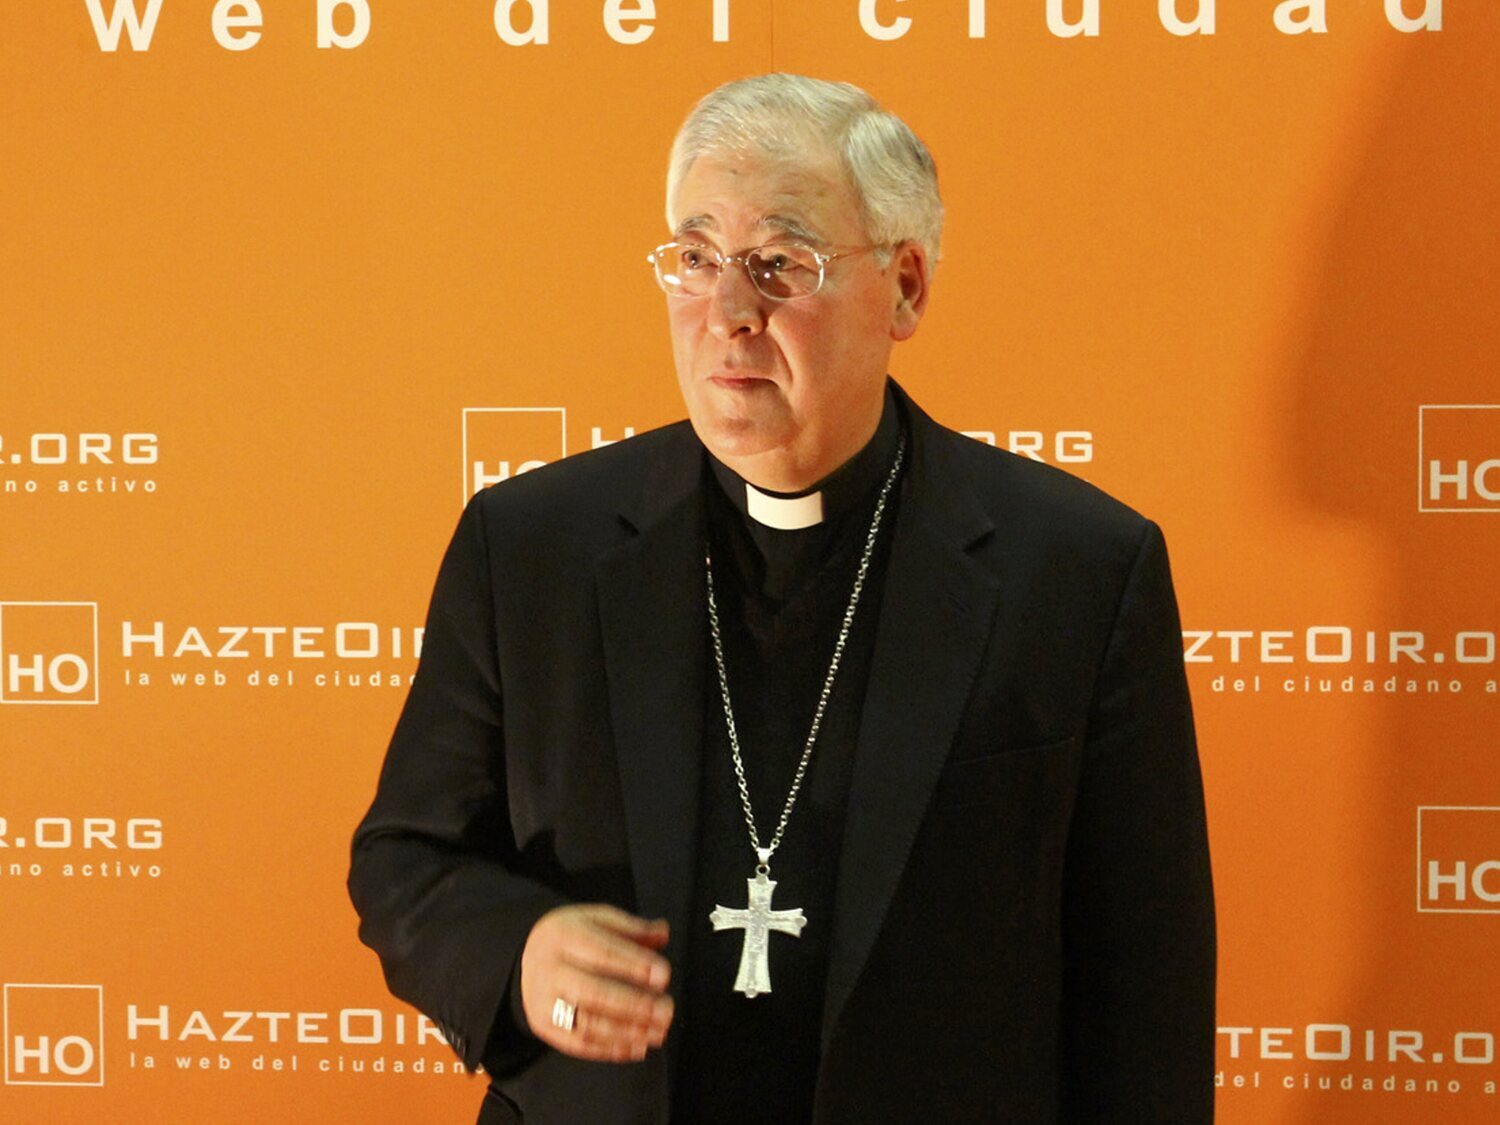 El Papa acepta la renuncia del obispo Reig Pla, que acumula múltiples polémicas de corte ultra